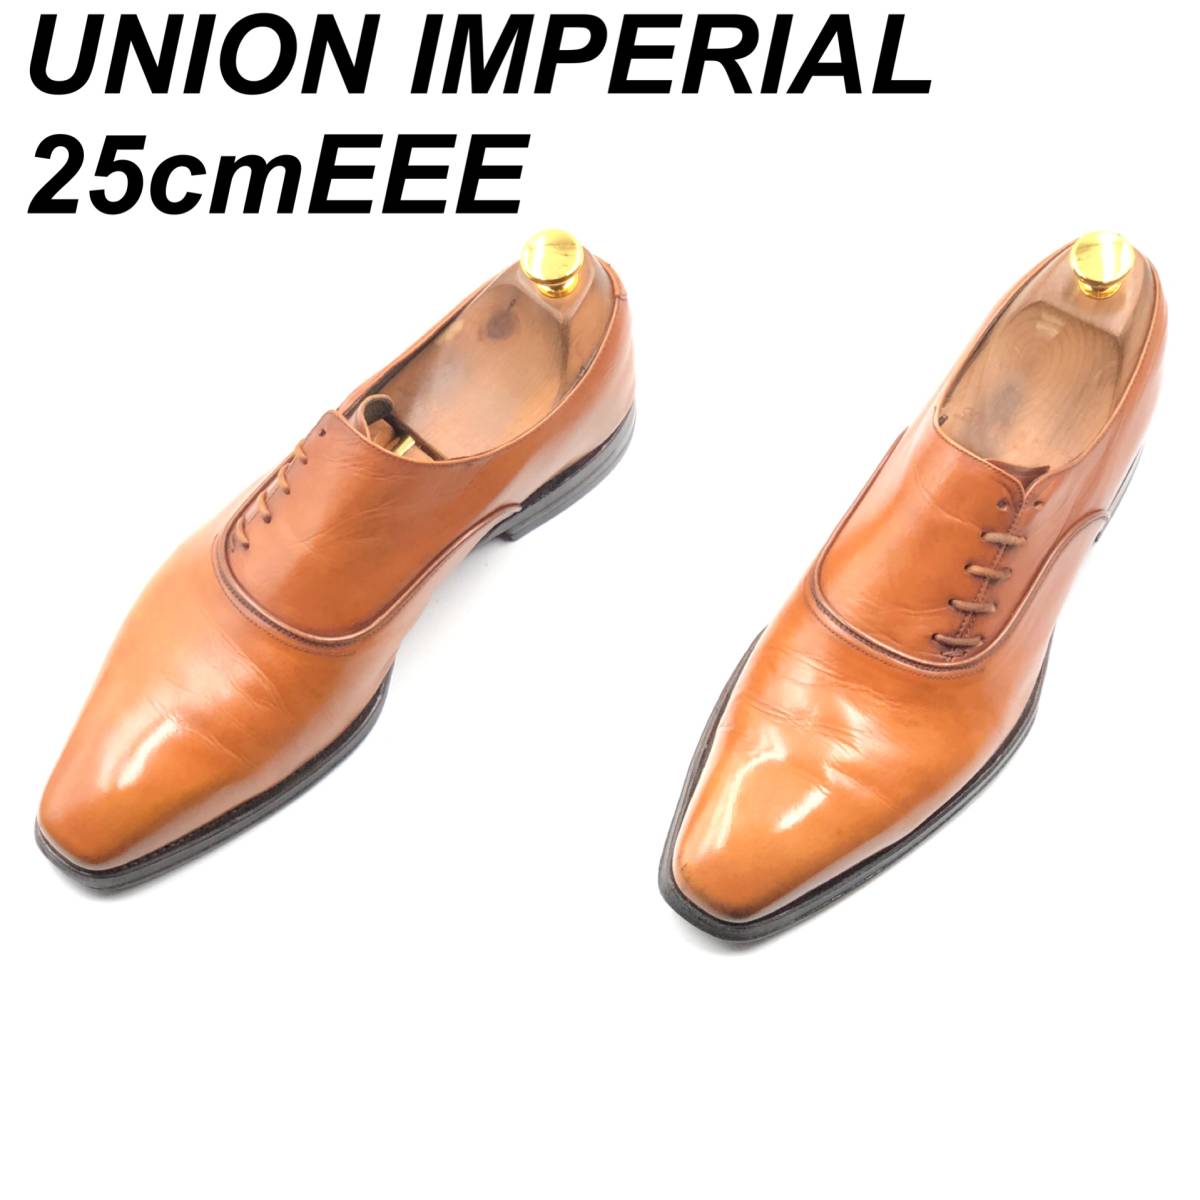 即決 UNION IMPERIAL ユニオン インペリアル 25cmEEE U1861 メンズ レザーシューズ プレーントゥ 茶 ブラウン 革靴 皮靴 ビジネスシューズ